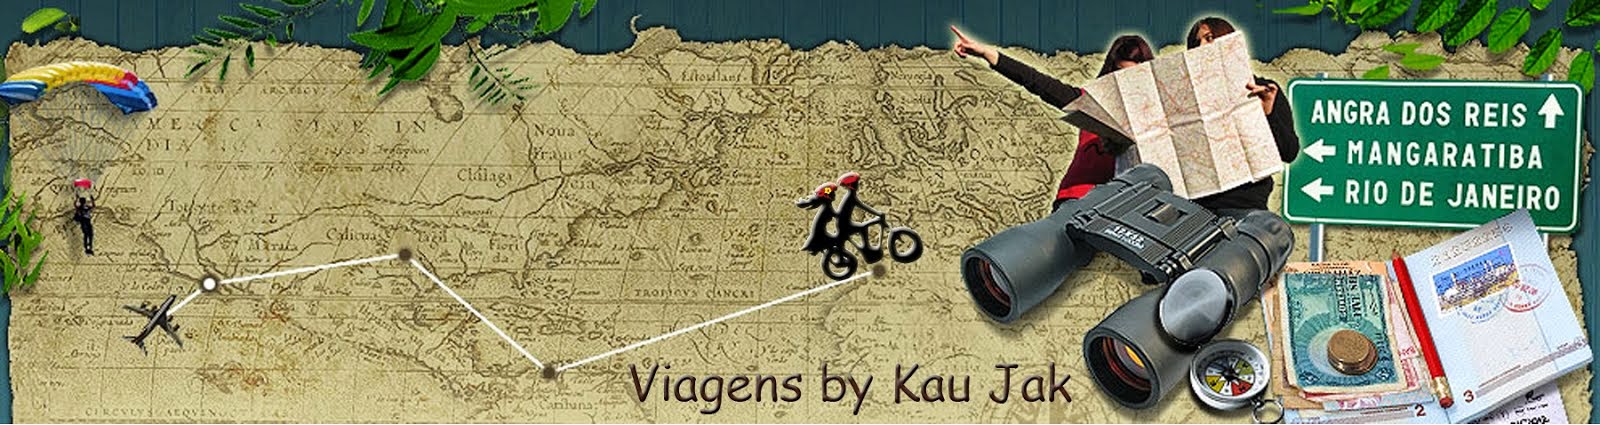  Viagens - By Kau Jak